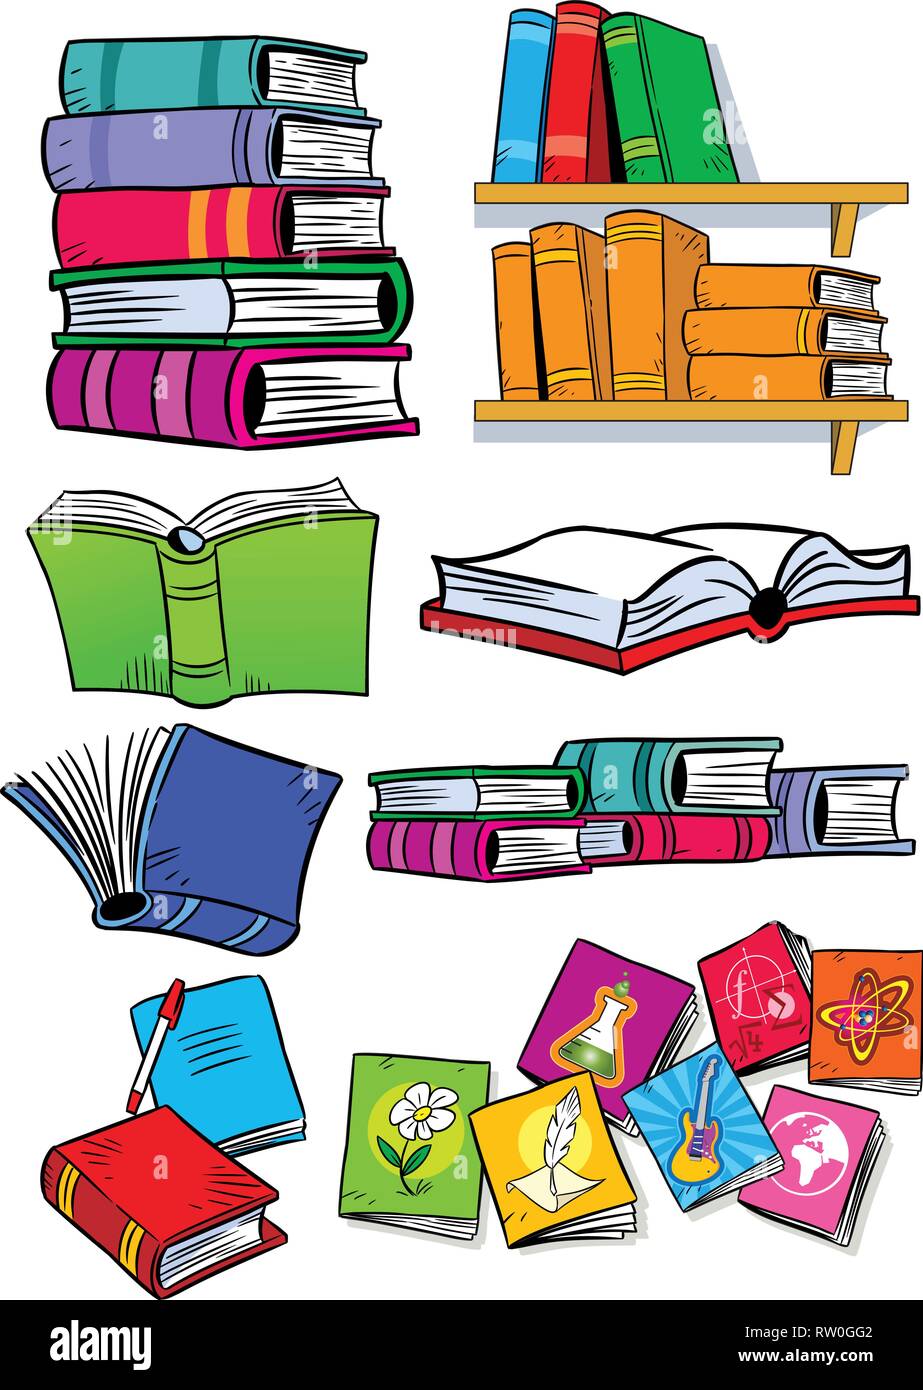 Auf vektor Abbildung zeigt einige Arten von Büchern. Objekte isoliert auf einem weißen Hintergrund, auf separaten Ebenen, in einem Cartoon Stil. Stock Vektor